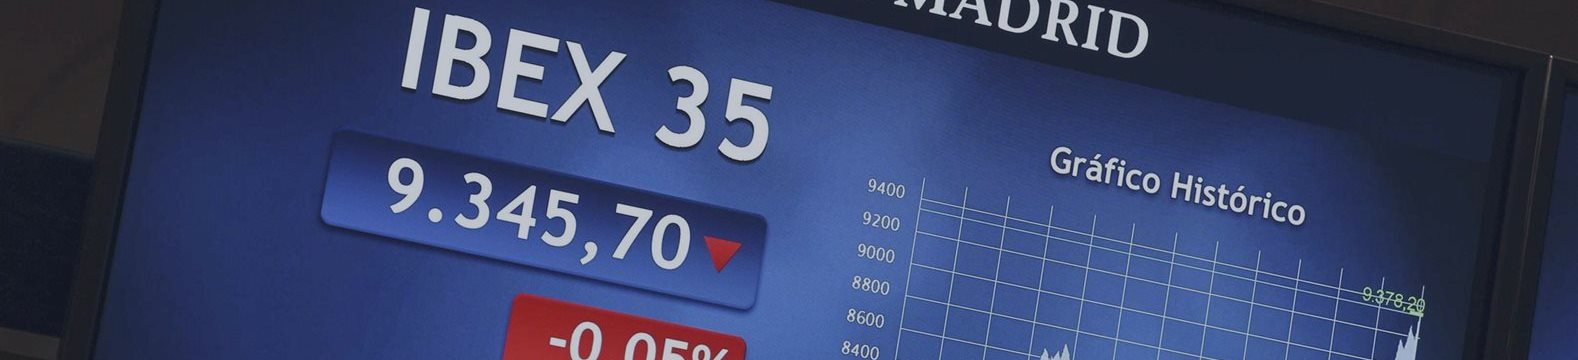 Las empresas del Ibex reducen su deuda en más de 42.000 millones desde 2010